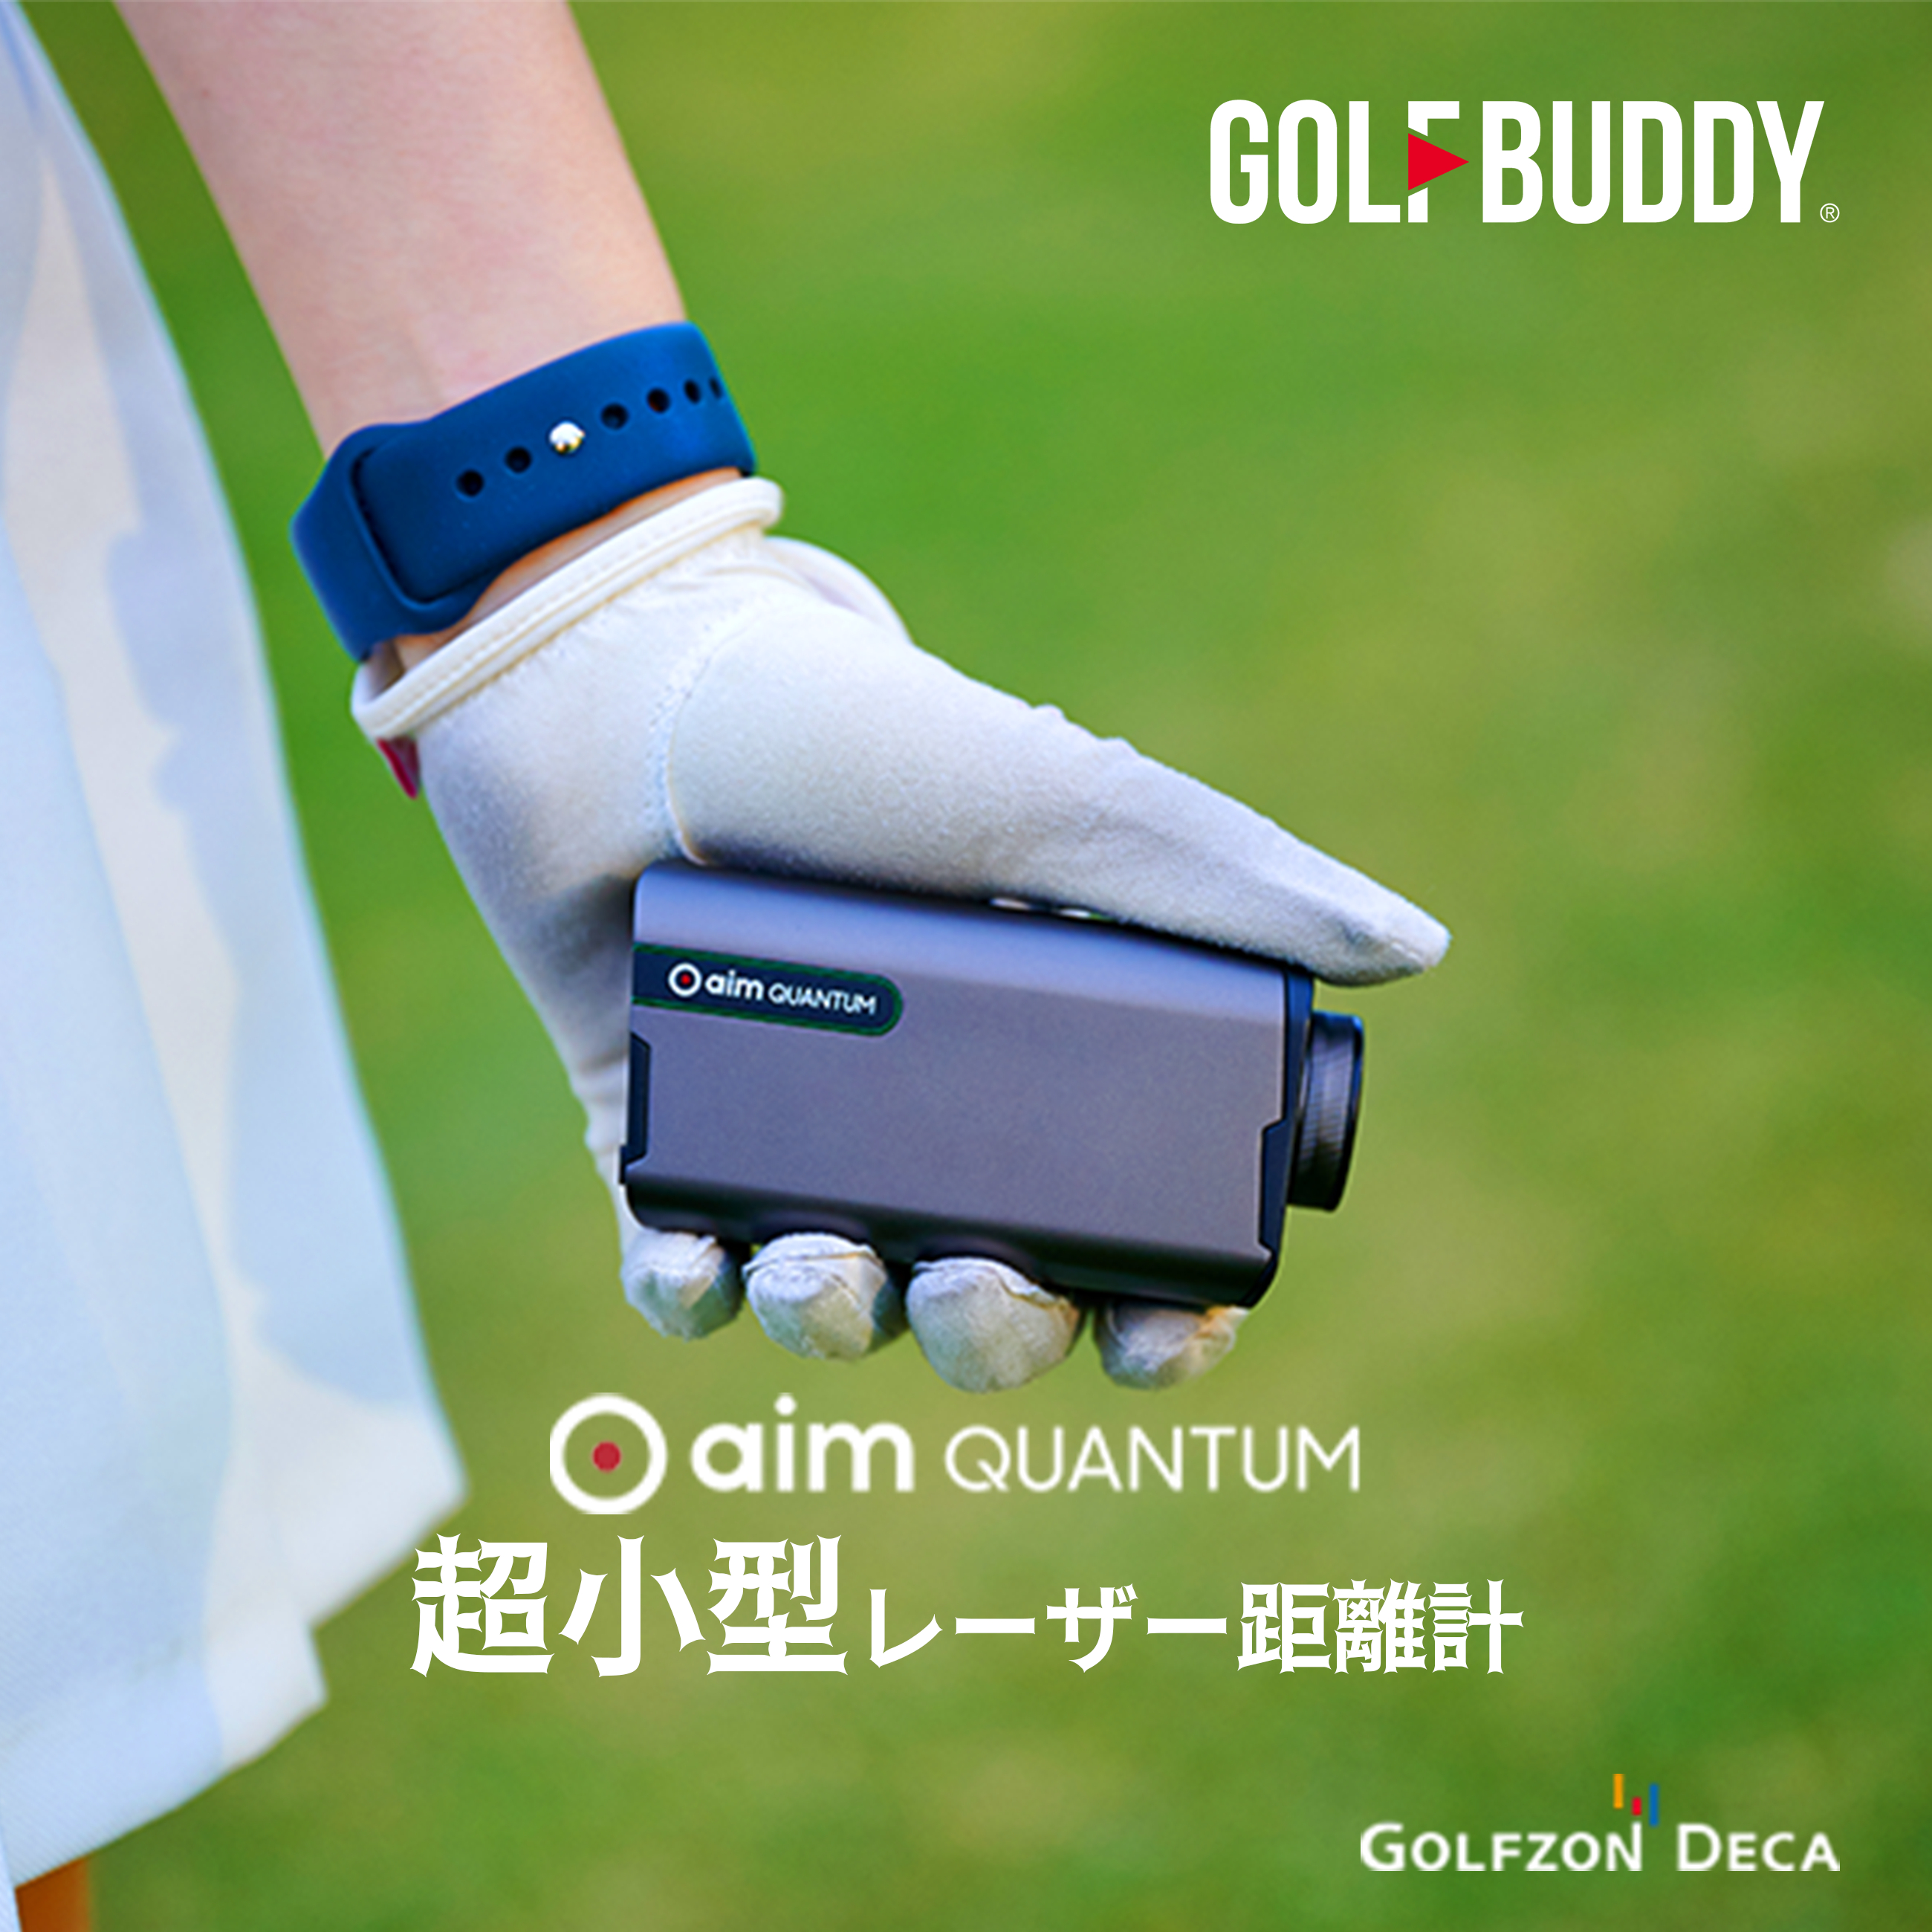 株式会社ゴルフゾンデカ, 超小型ゴルフ距離計の革新「GOLFBUDDY aim